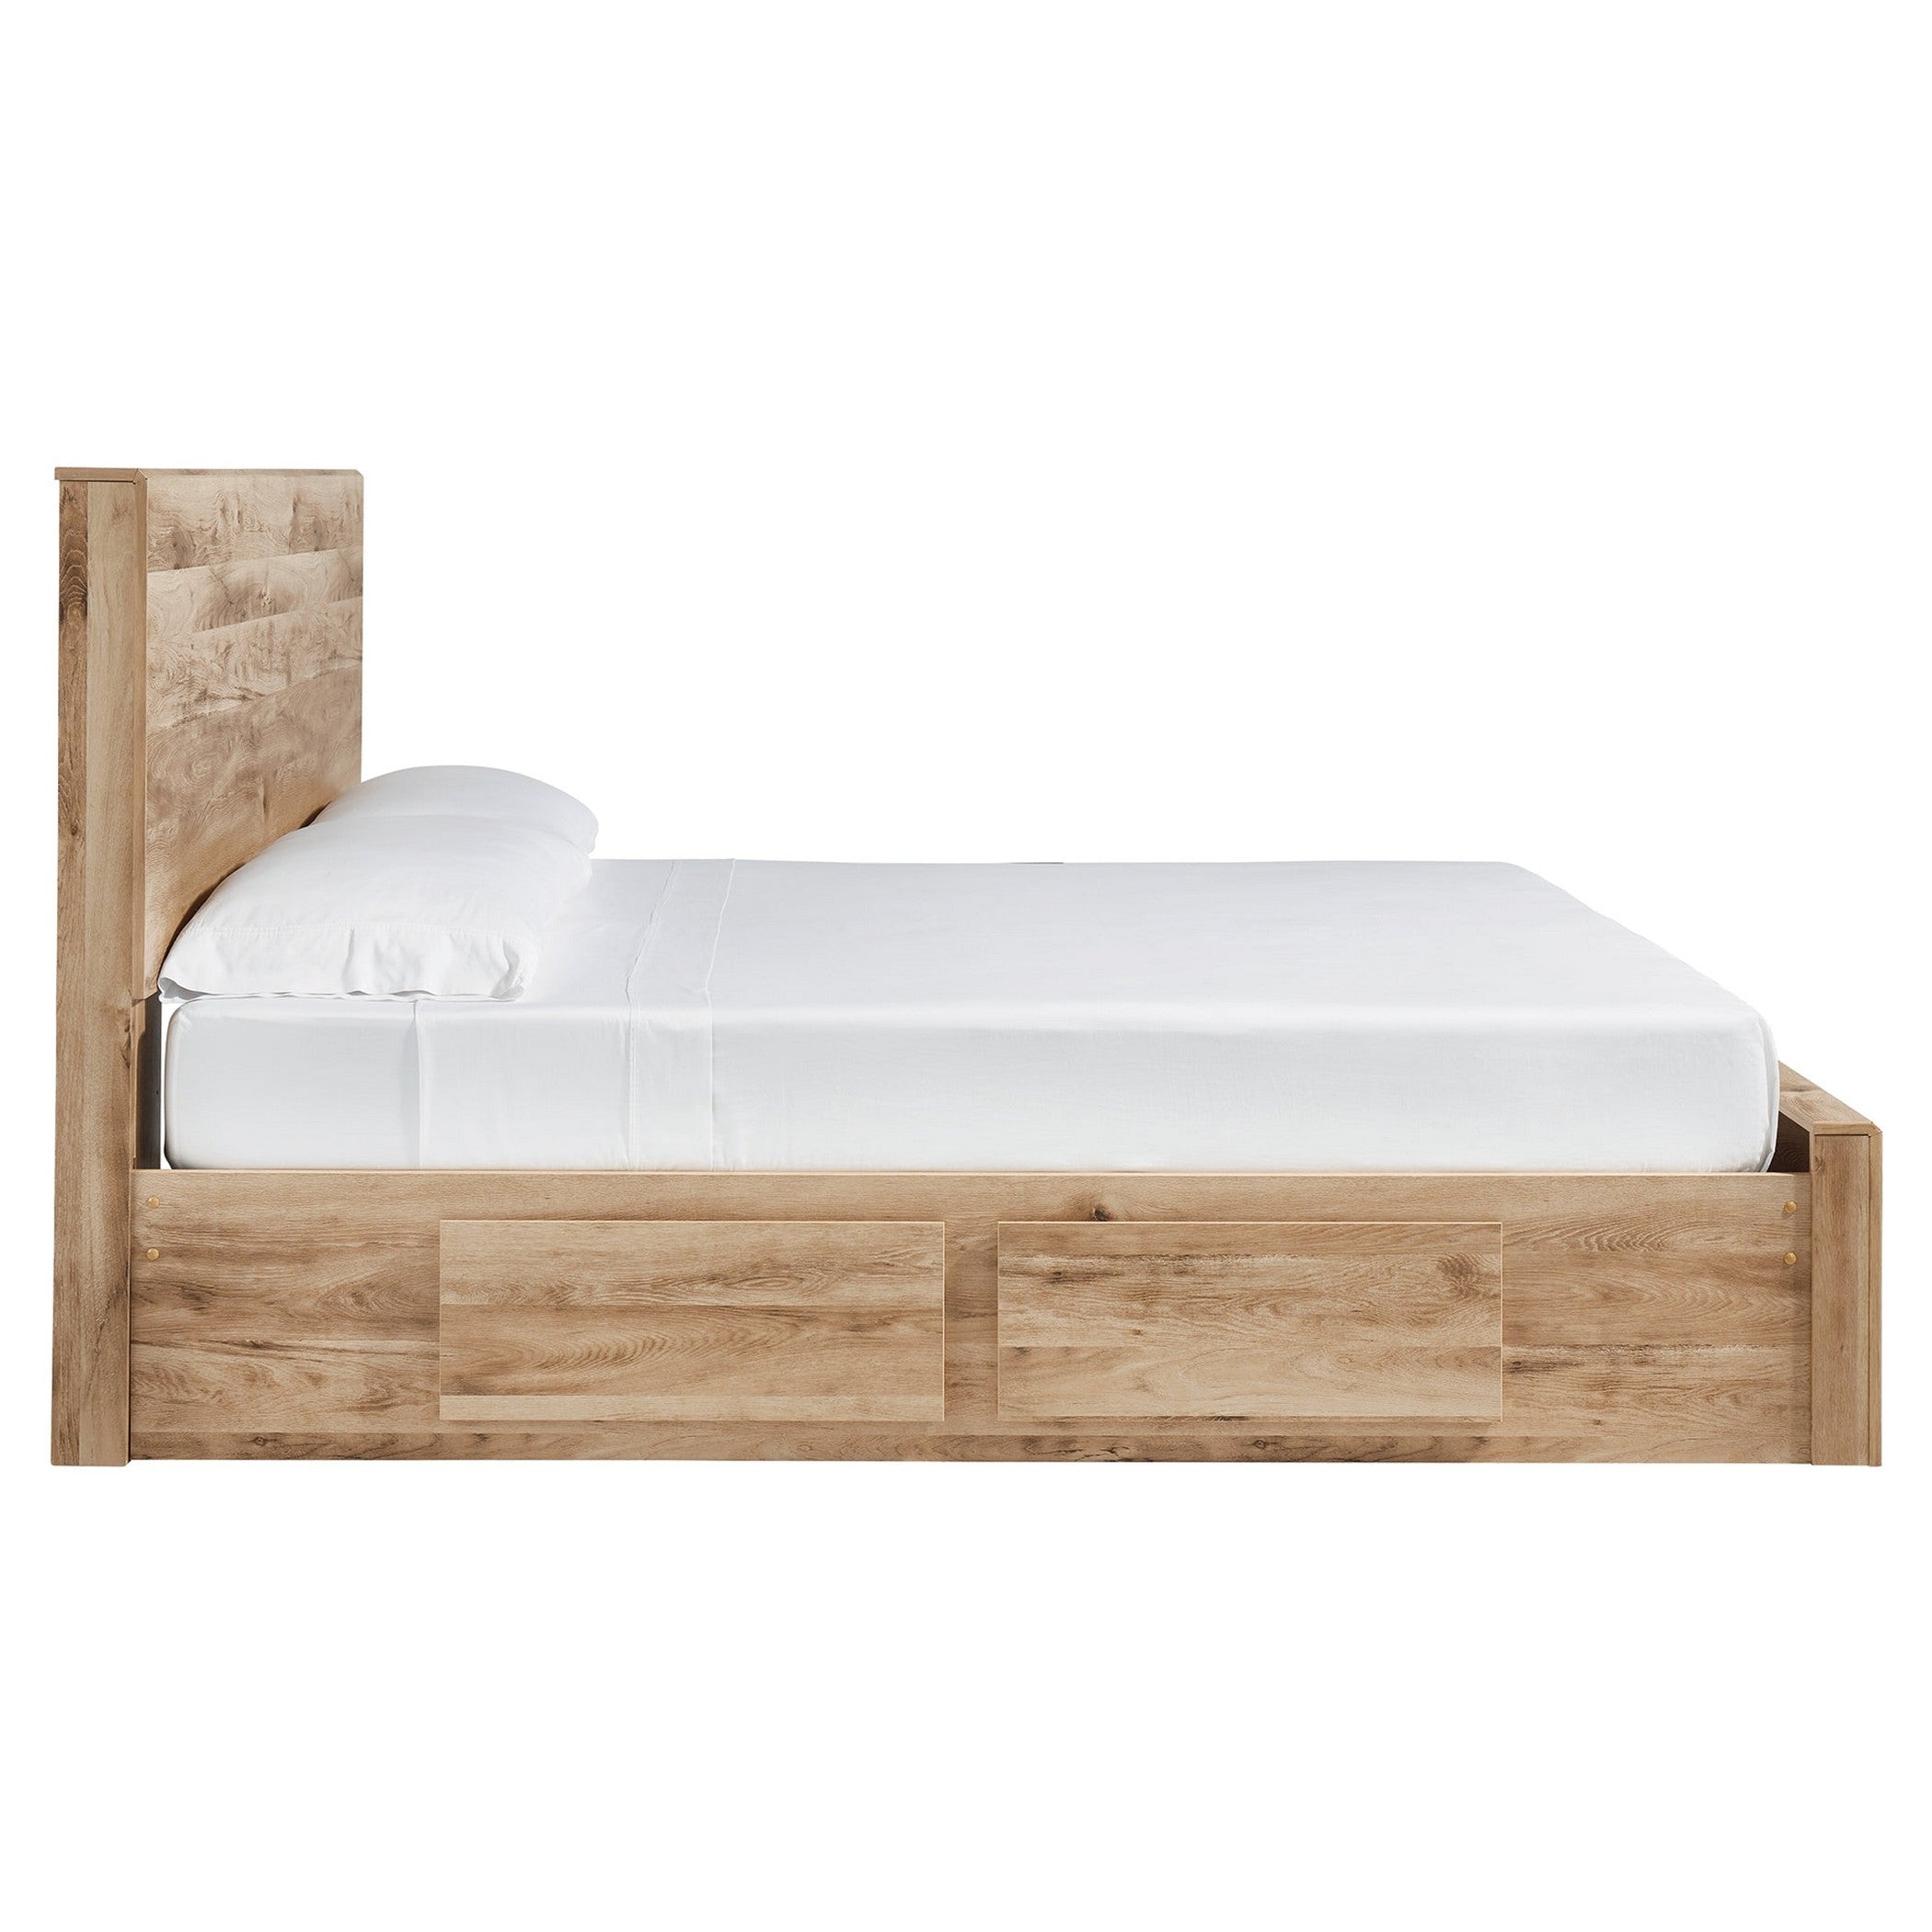 Hyanna Panel Storage Bed with 1 Under Bed Storage Drawer